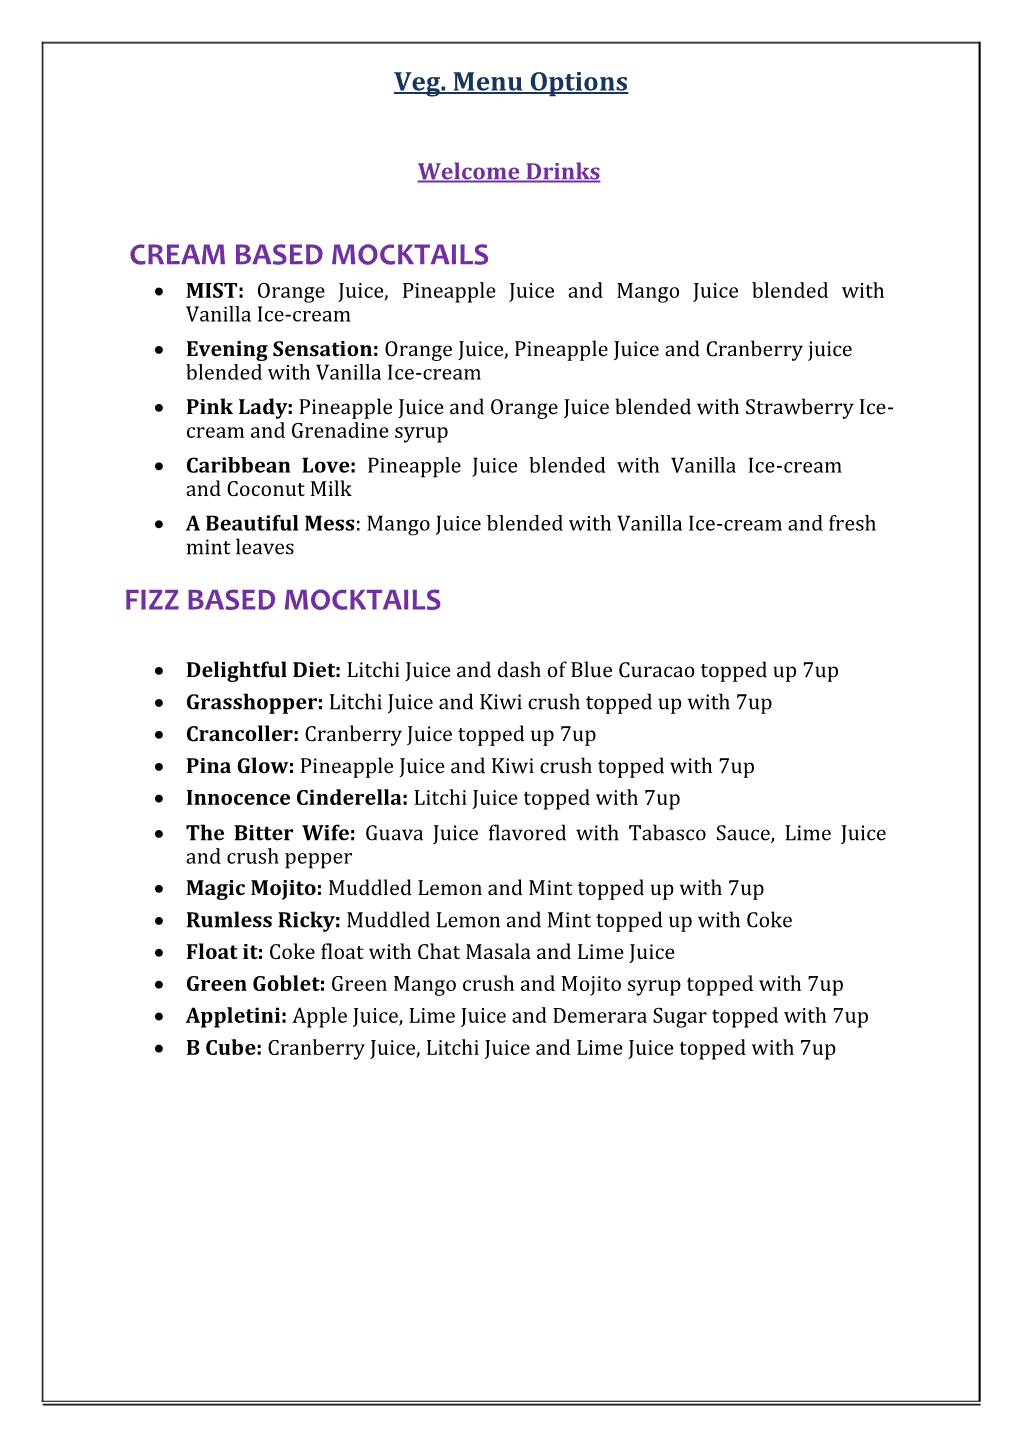 Cream Based Mocktails